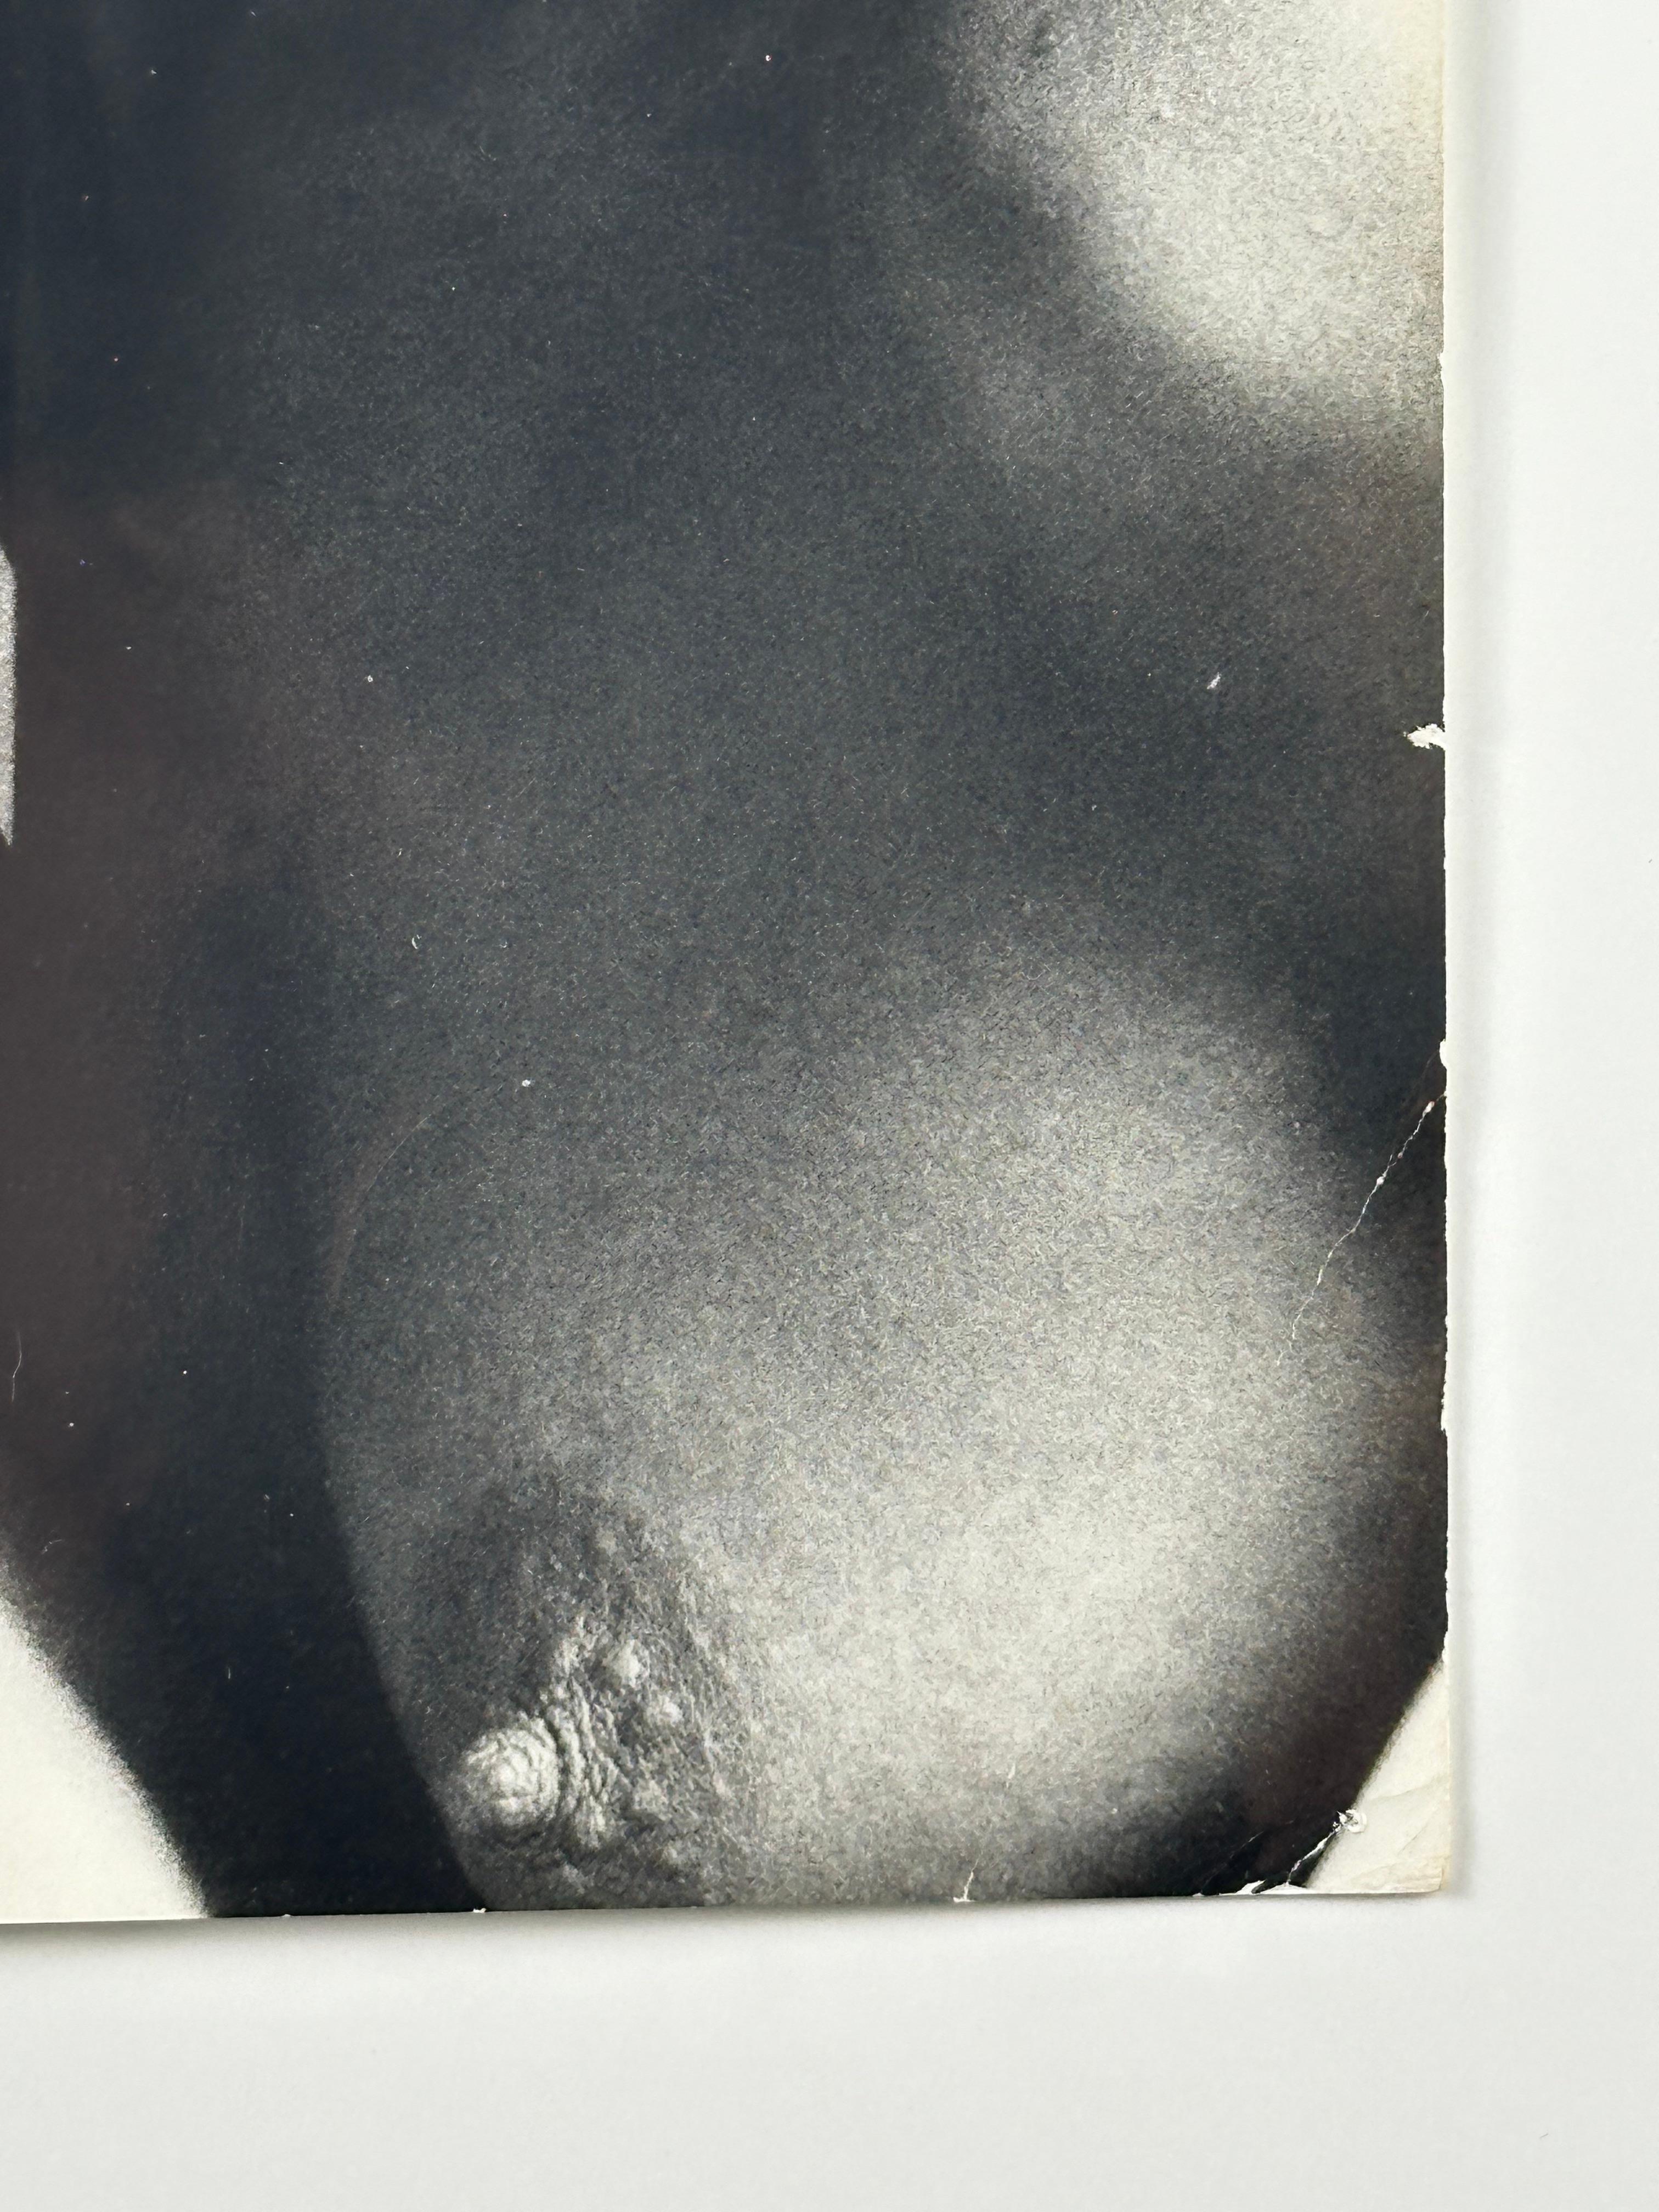 Victor Arimondi (1942-2001). Portrait de Grace Jones, 1975. Le tirage d'époque mesure 8 x 11,75 pouces ; 10,25 x 13 pouces encadré. Cachet du Studio de l'Artistics au verso. Quelques plis dans les coins, trous d'épingle, légères salissures. 

Cet